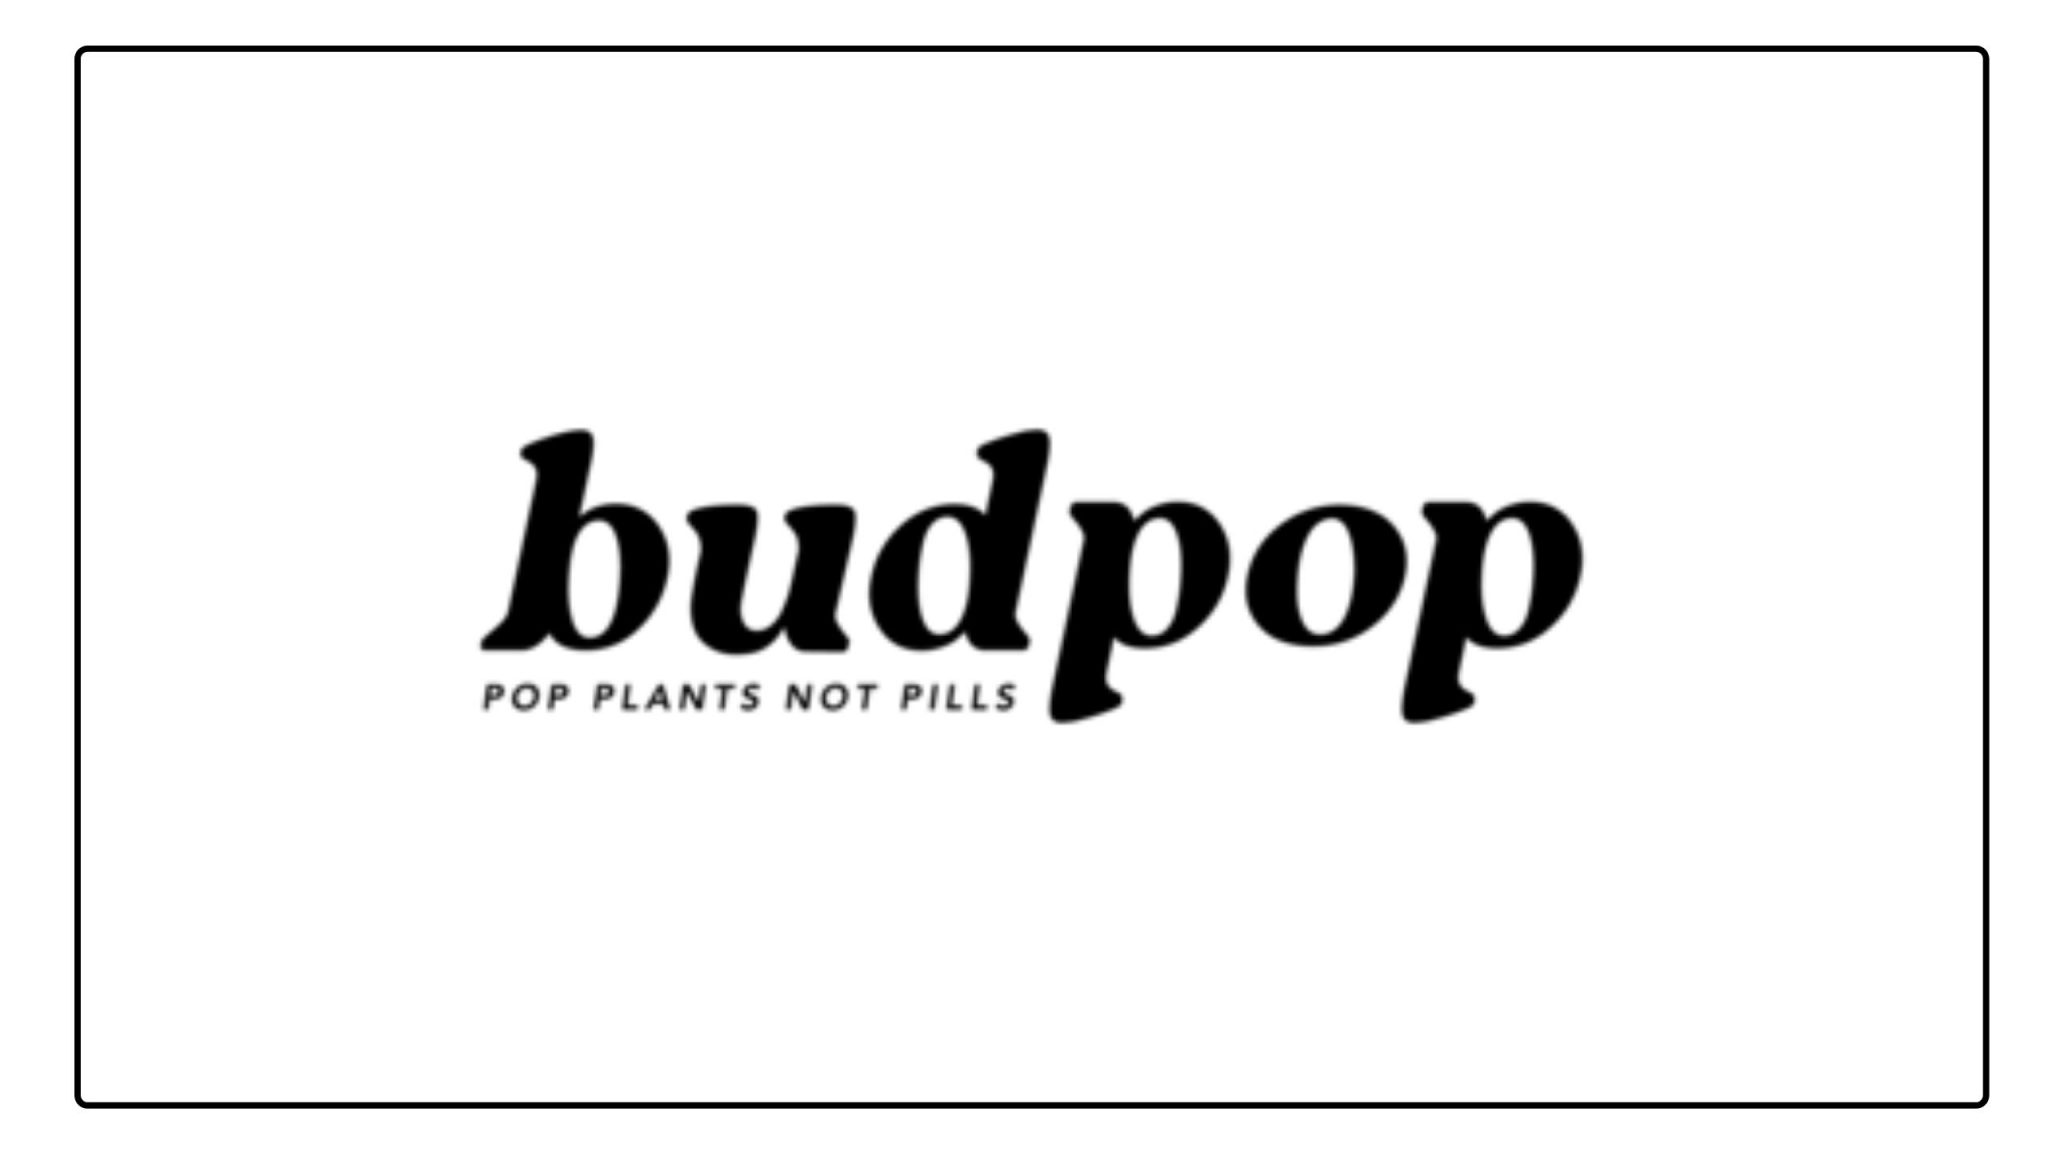 Budpop (1)